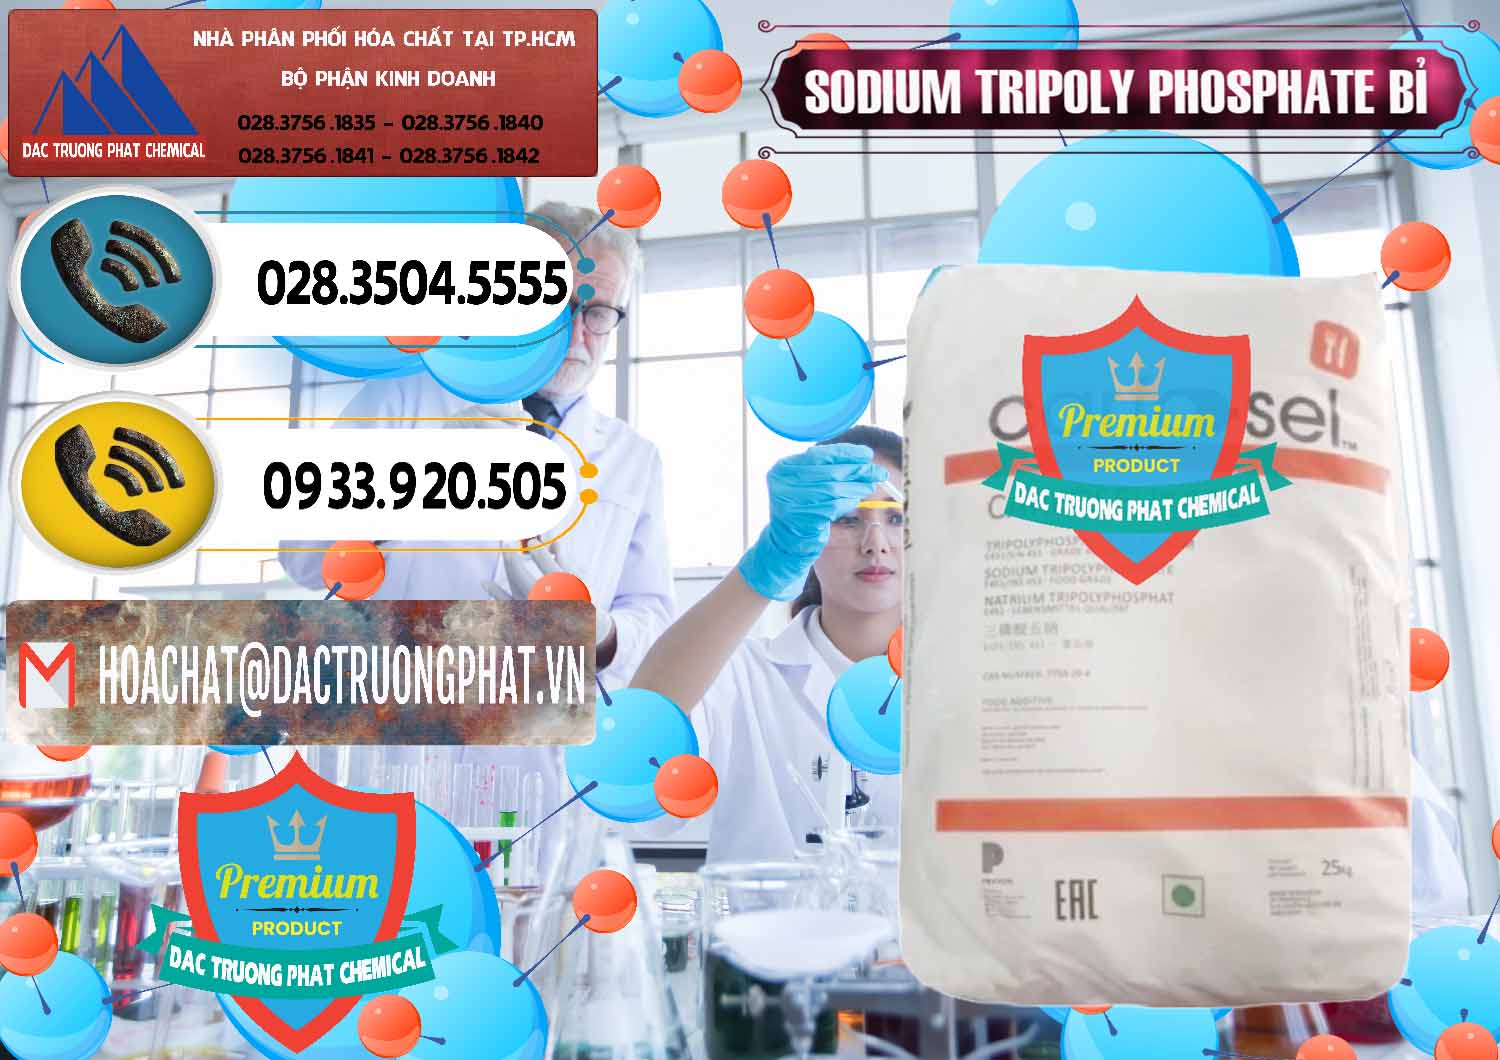 Chuyên nhập khẩu & bán Sodium Tripoly Phosphate - STPP Carfosel 991 Bỉ Belgium - 0429 - Công ty cung ứng - phân phối hóa chất tại TP.HCM - hoachatdetnhuom.vn